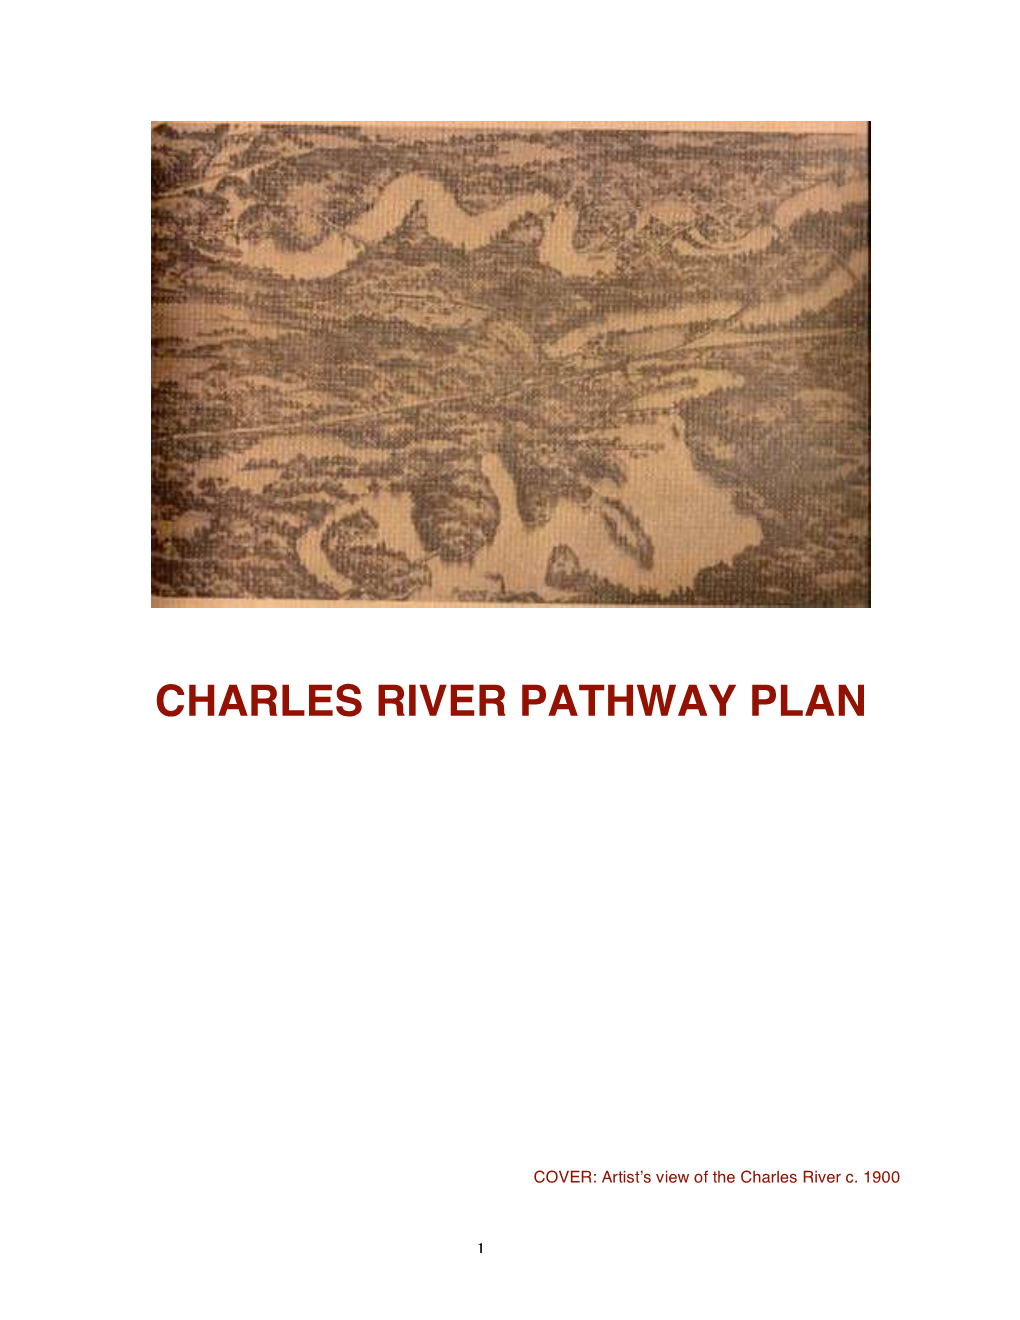 1975 Charles River Pathway Plan